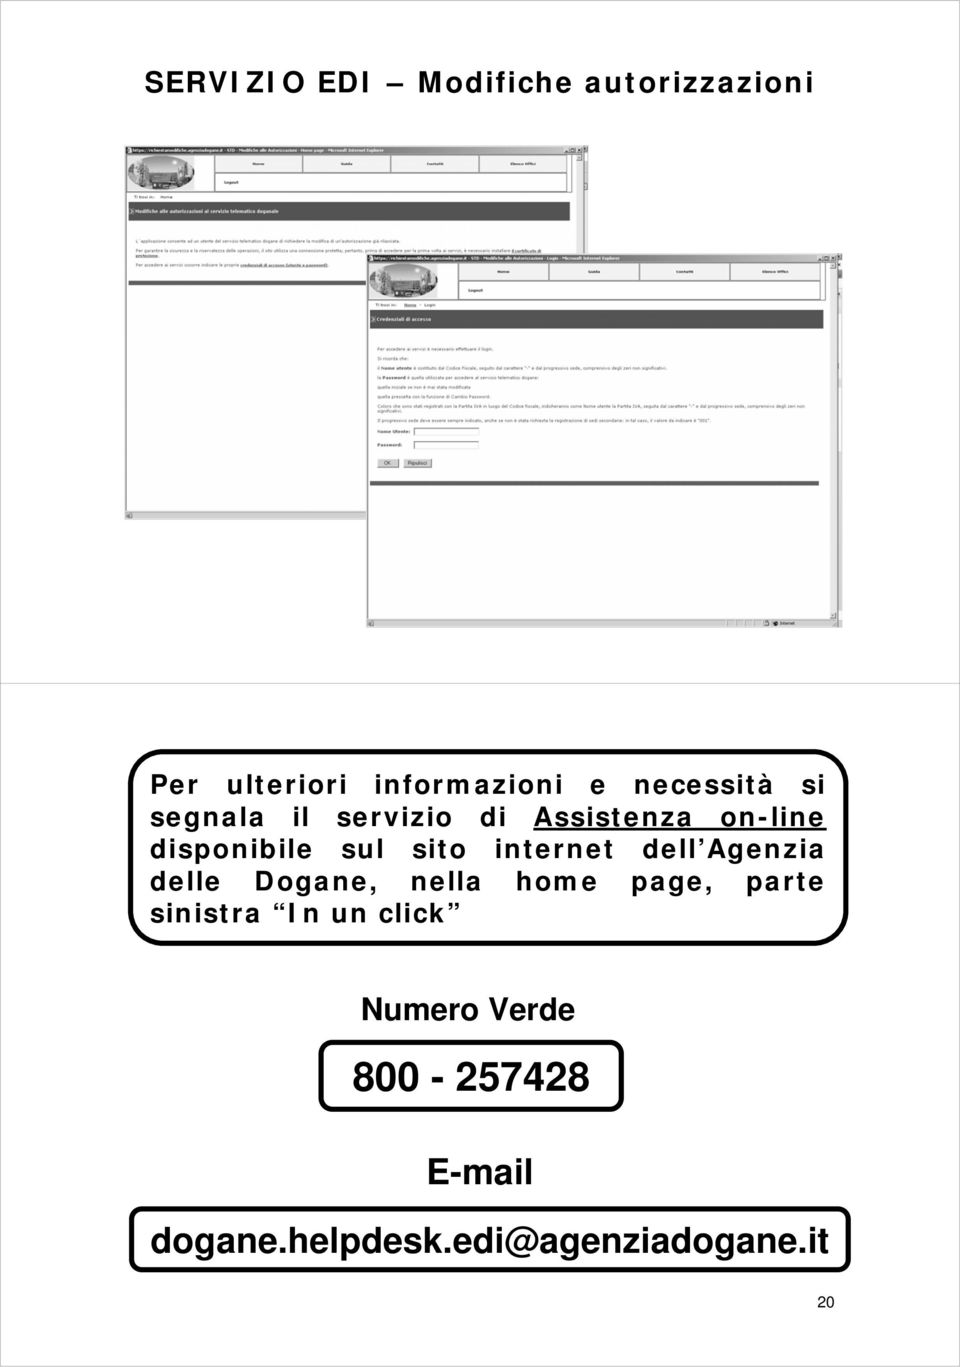 sito internet dell Agenzia delle Dogane, nella home page, parte sinistra